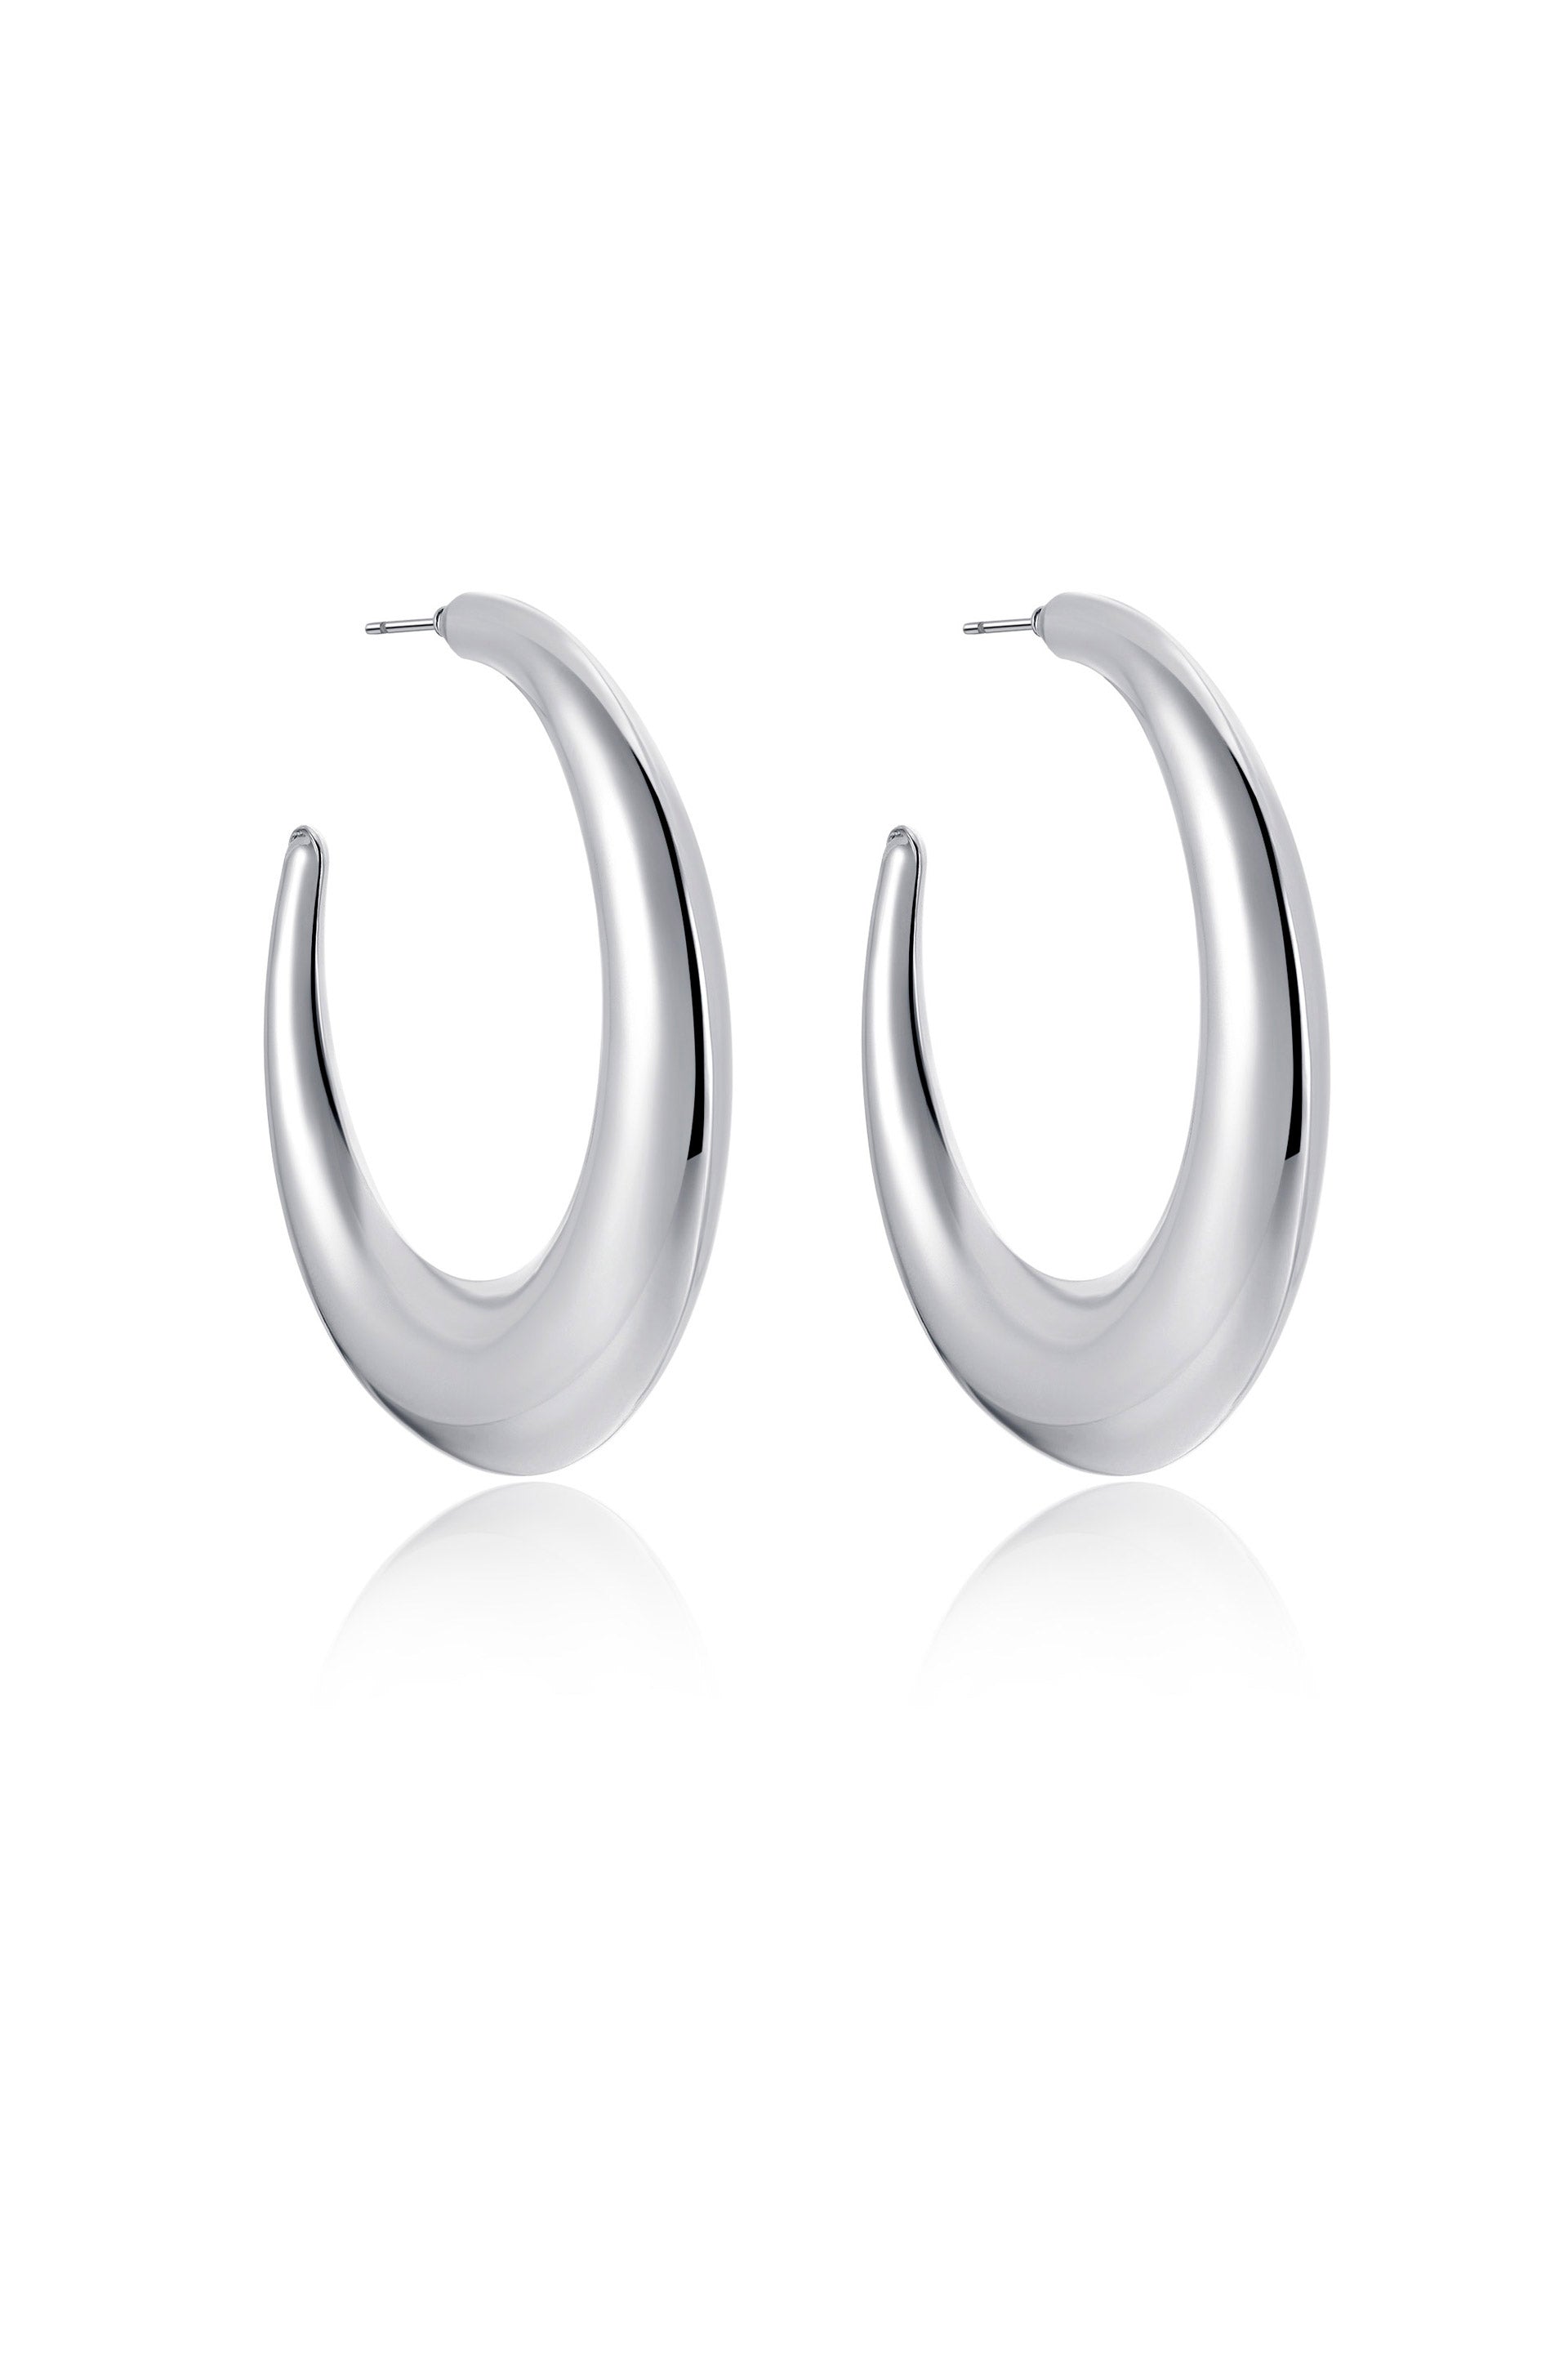 The Essential Hoop Earring in rhodium side